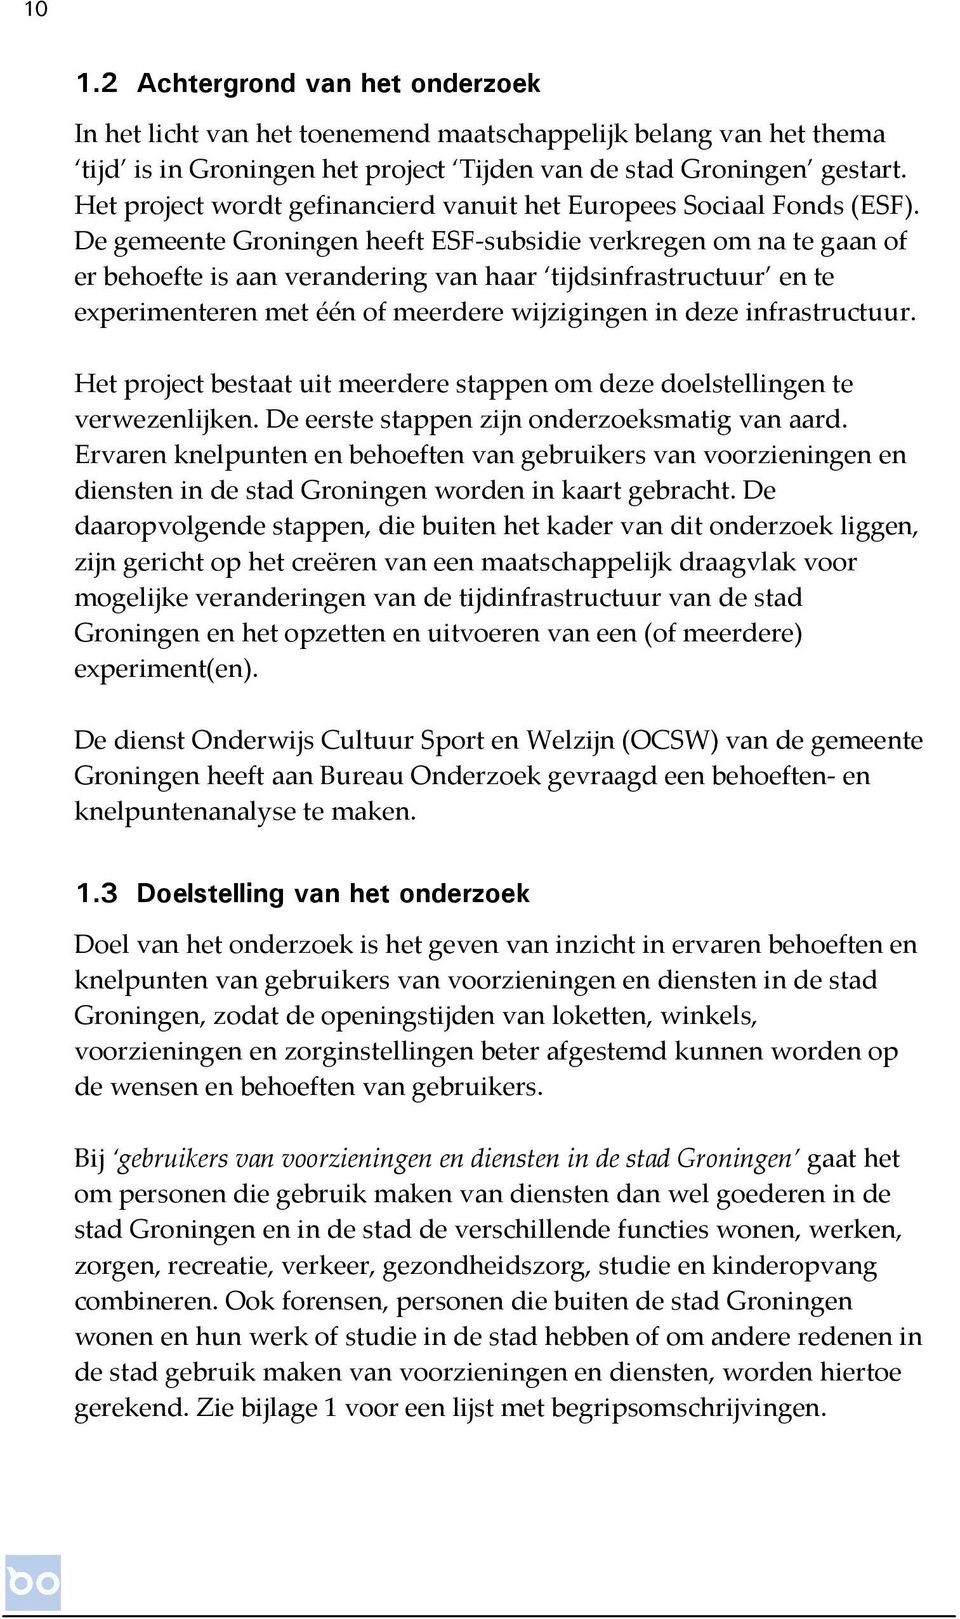 De gemeente Groningen heeft ESF-subsidie verkregen om na te gaan of er behoefte is aan verandering van haar tijdsinfrastructuur en te experimenteren met één of meerdere wijzigingen in deze